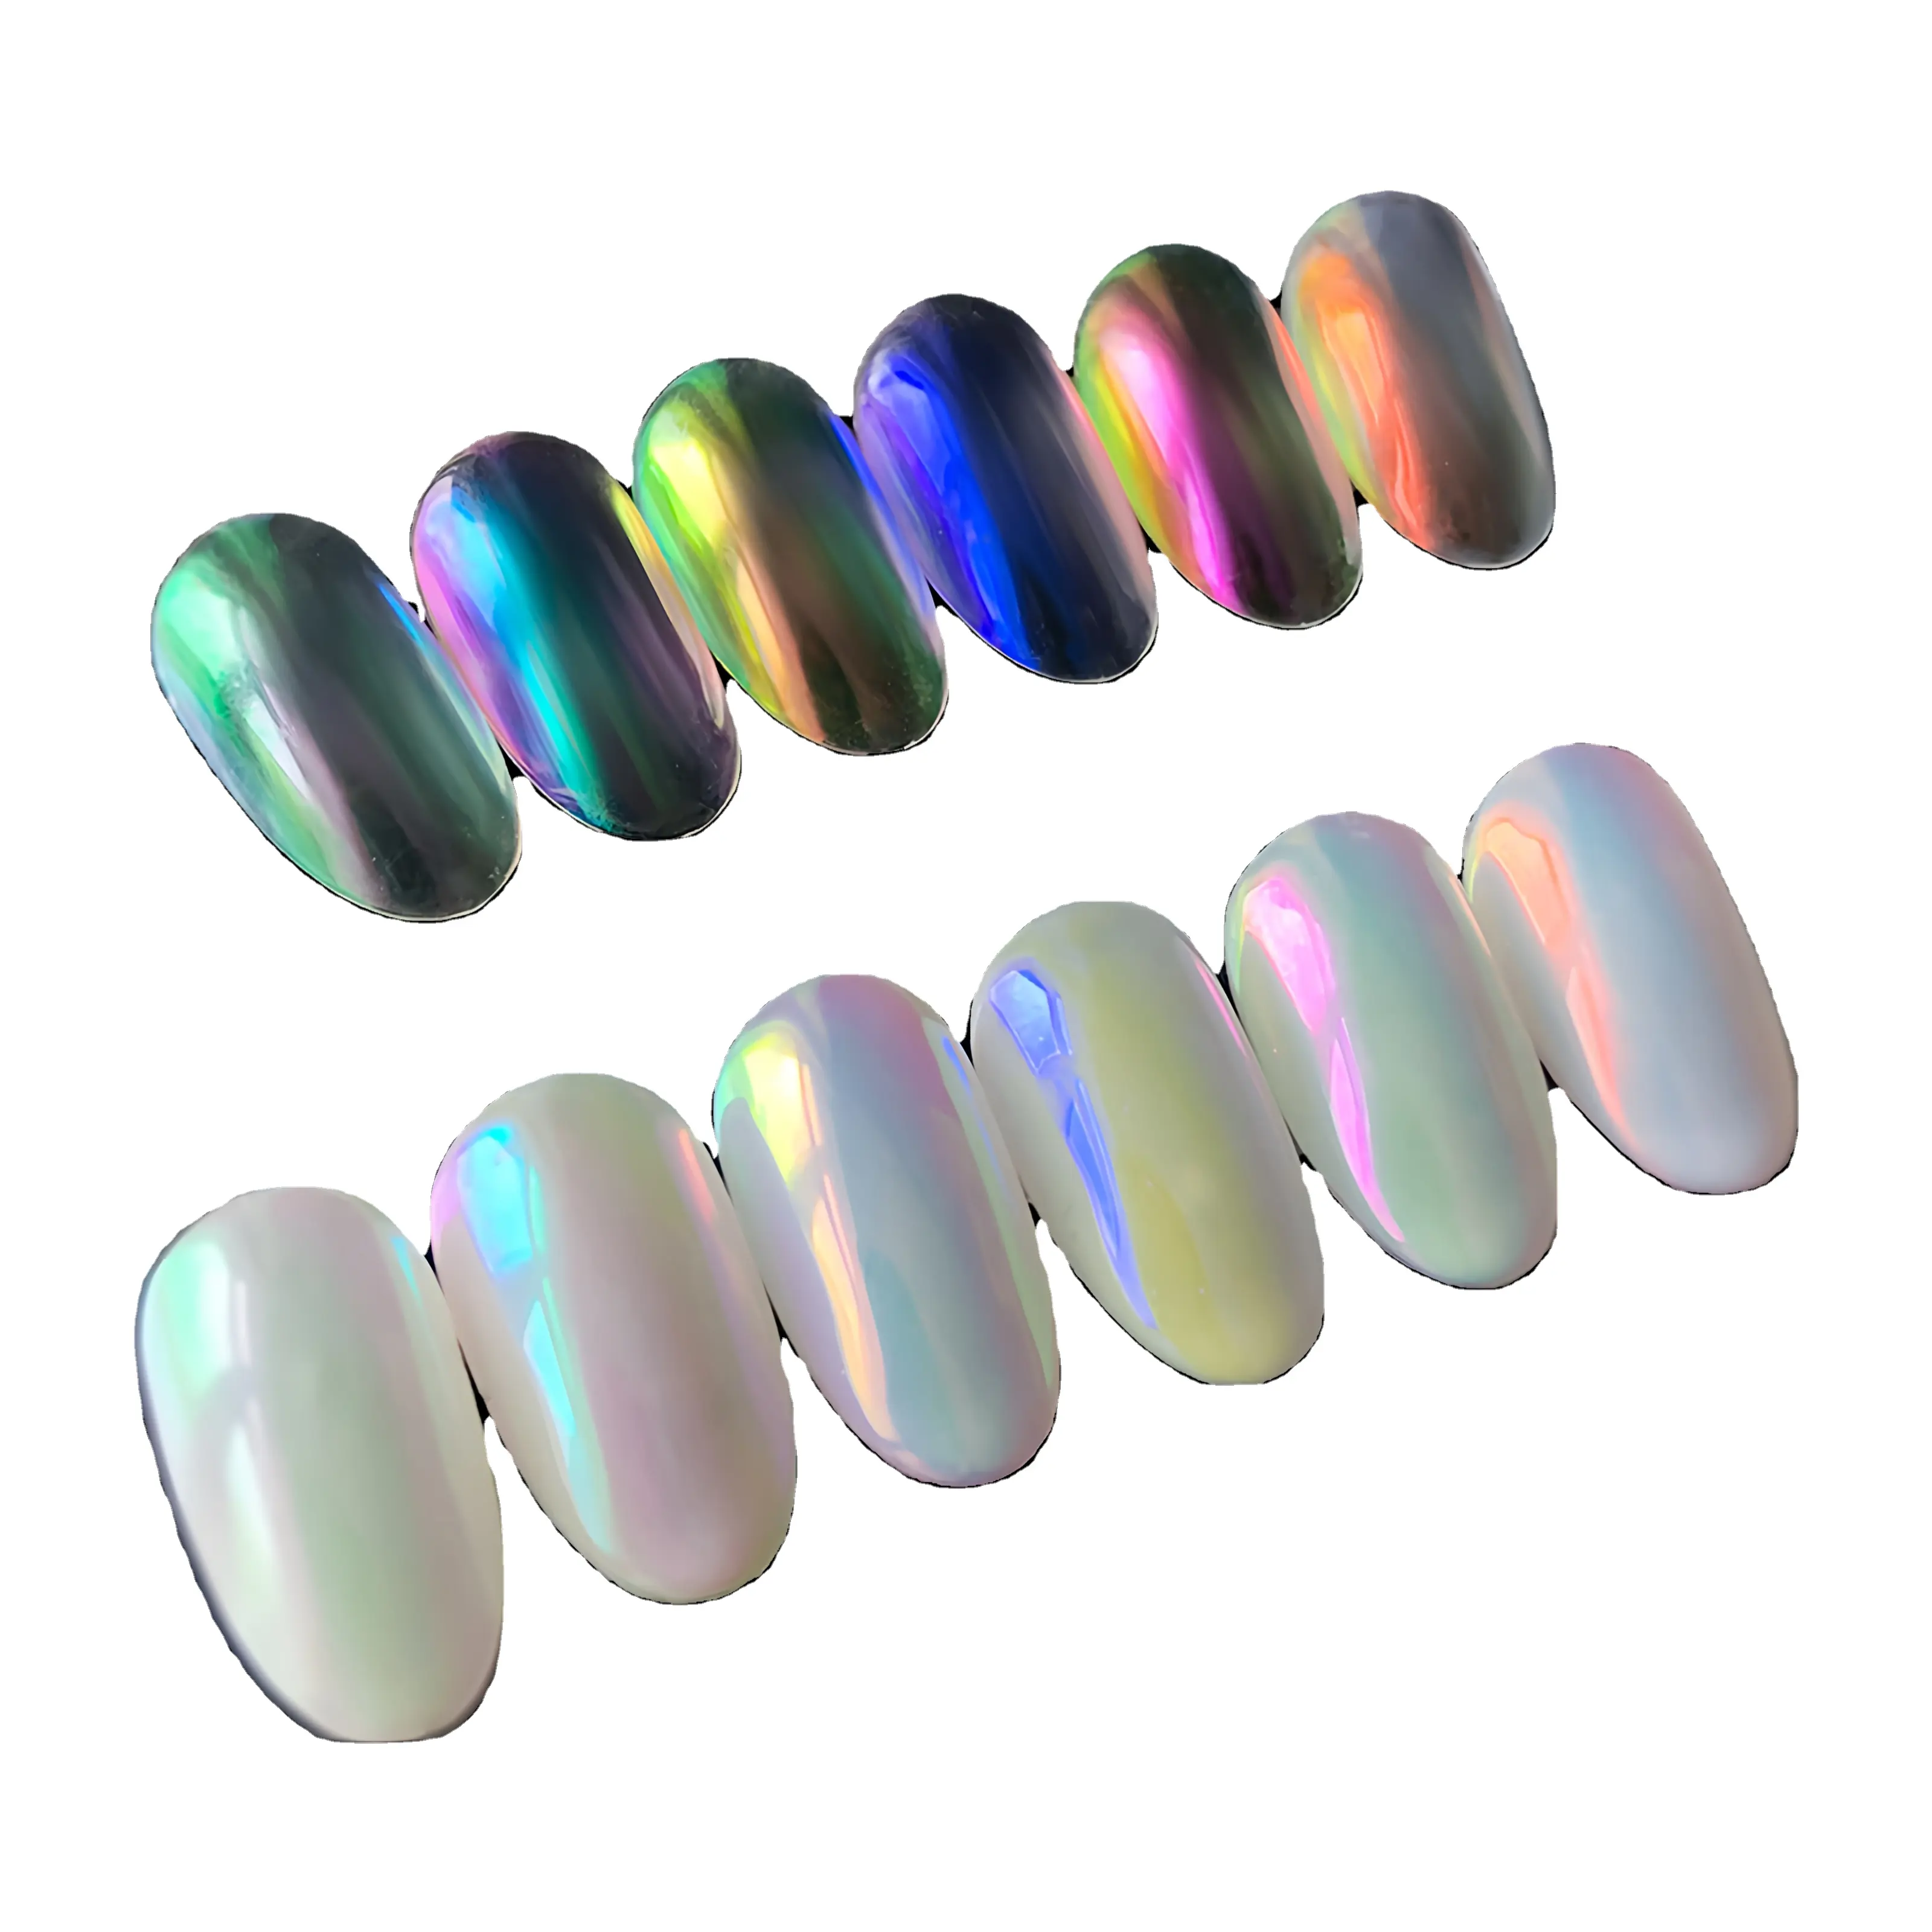 Polvo de pigmento para decoración de uñas nacarado de la serie Chameleon de grado cosmético disponible en varios colores